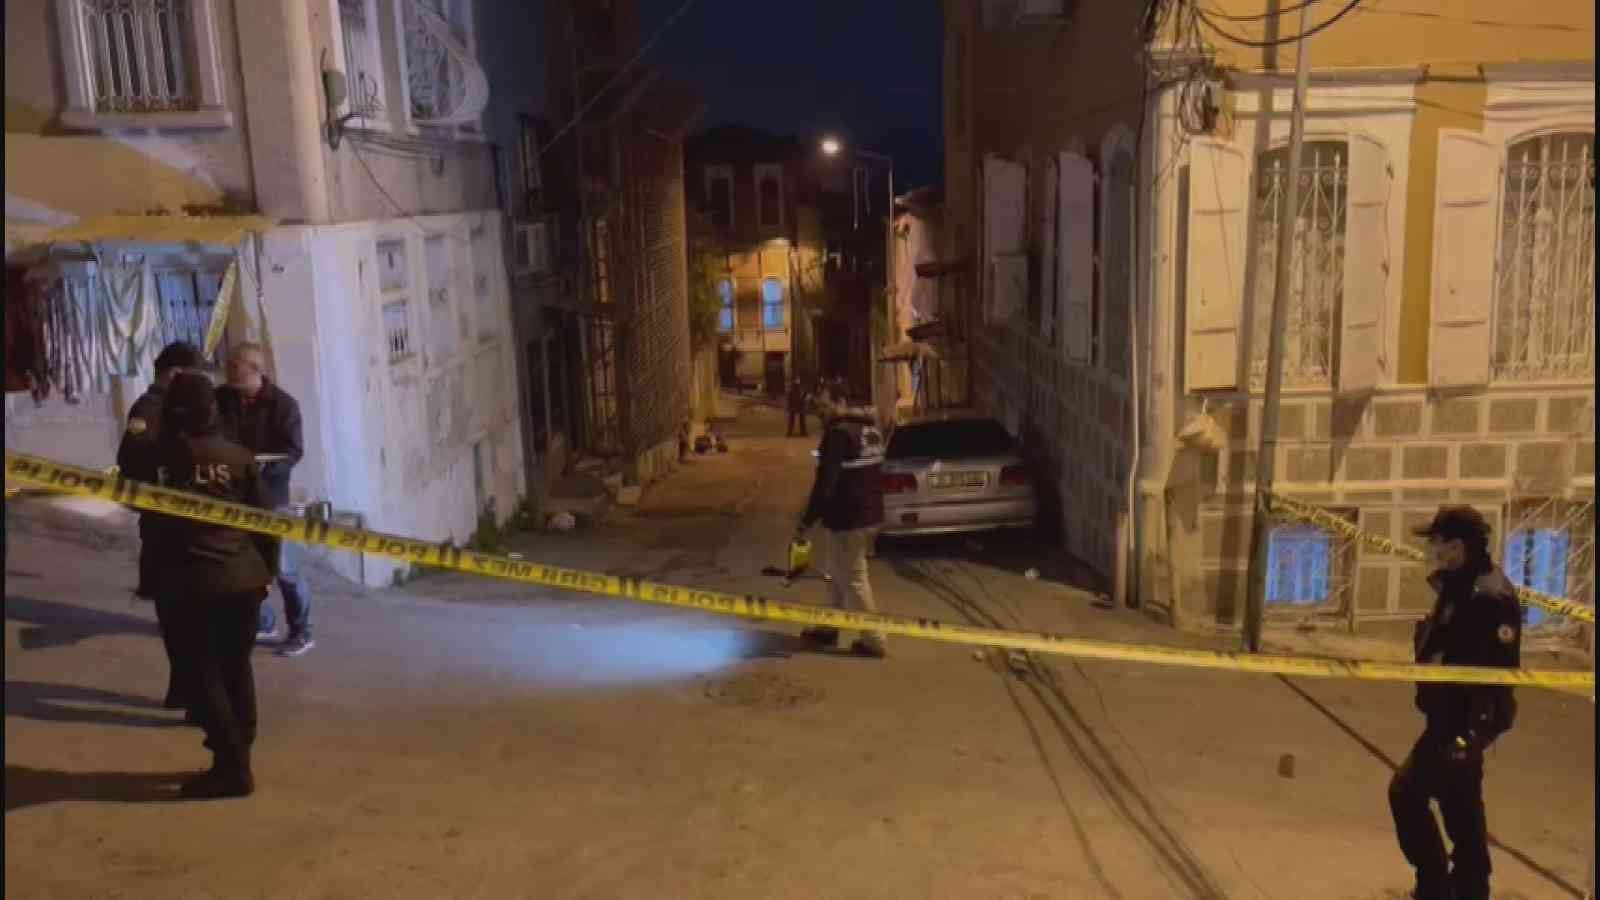 İzmir’de ‘yol verme’ tartışması silahlı ve bıçaklı kavgaya dönüştü: 6 yaralı #izmir